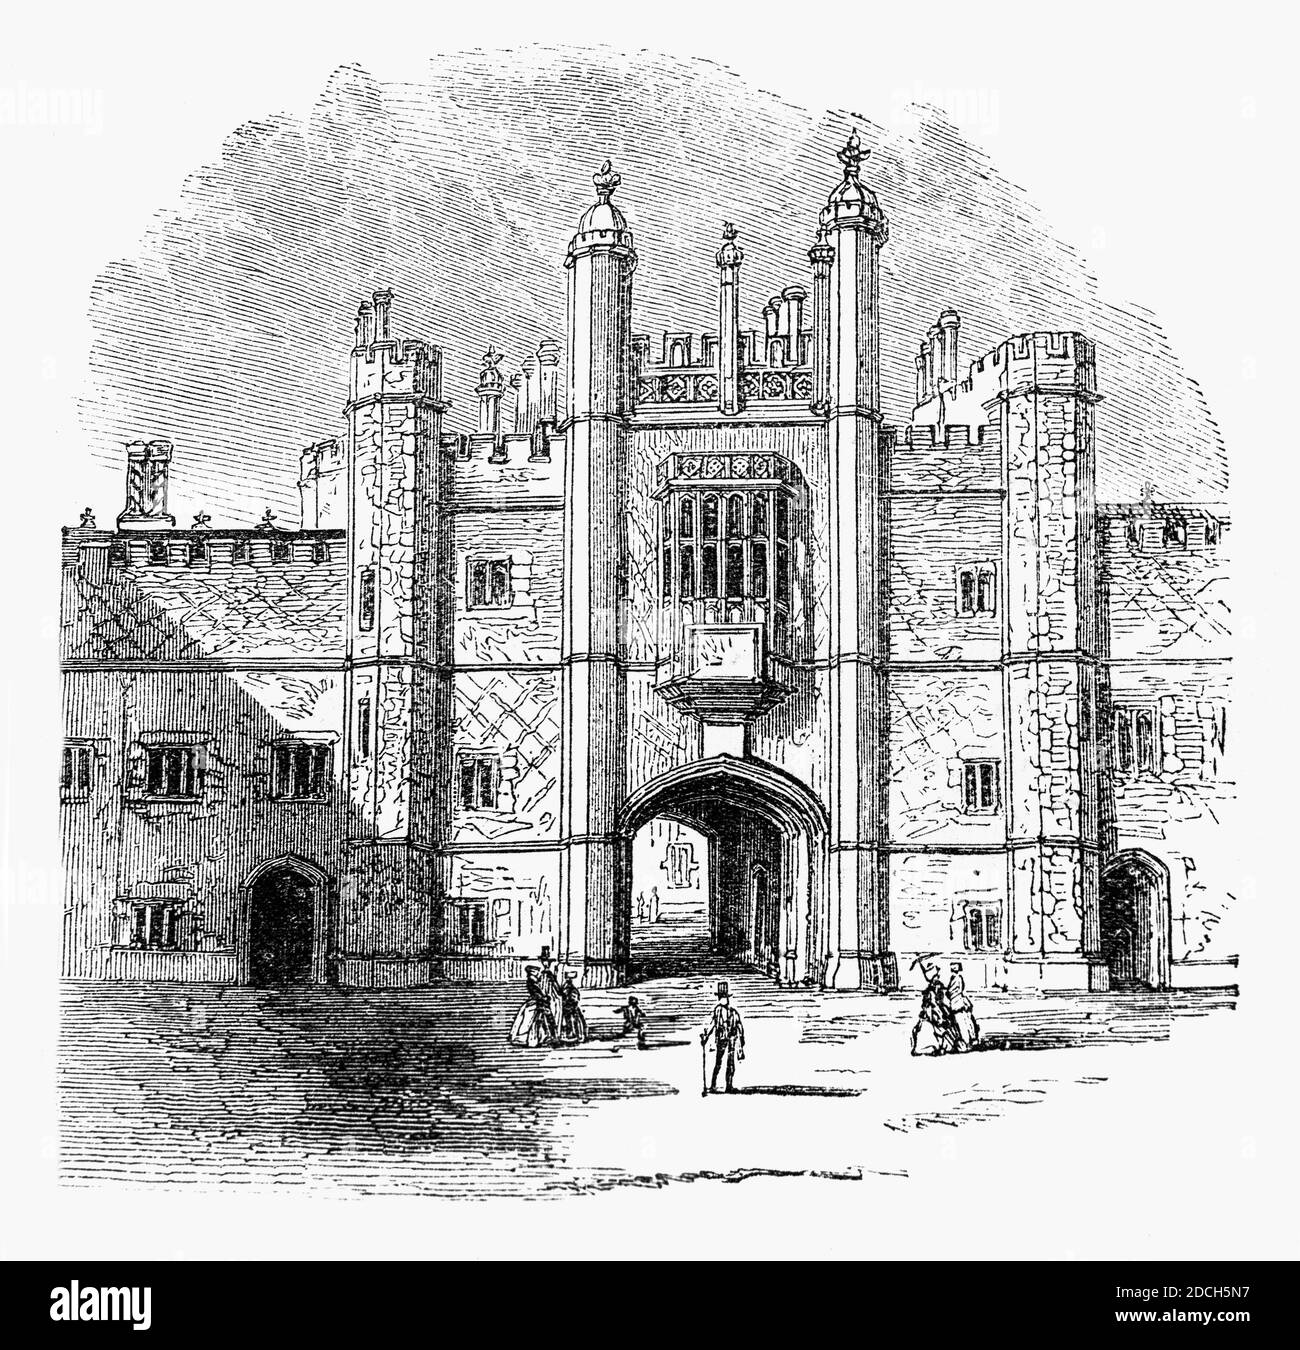 Eine Ansicht des 19. Jahrhunderts des Tores zum Eton College, das 1440 von König Heinrich VI. Gegründet wurde Es ist ein 13–18 unabhängiges Internat für Jungen in der Gemeinde Eton, in der Nähe von Windsor in Berkshire, England. Stockfoto